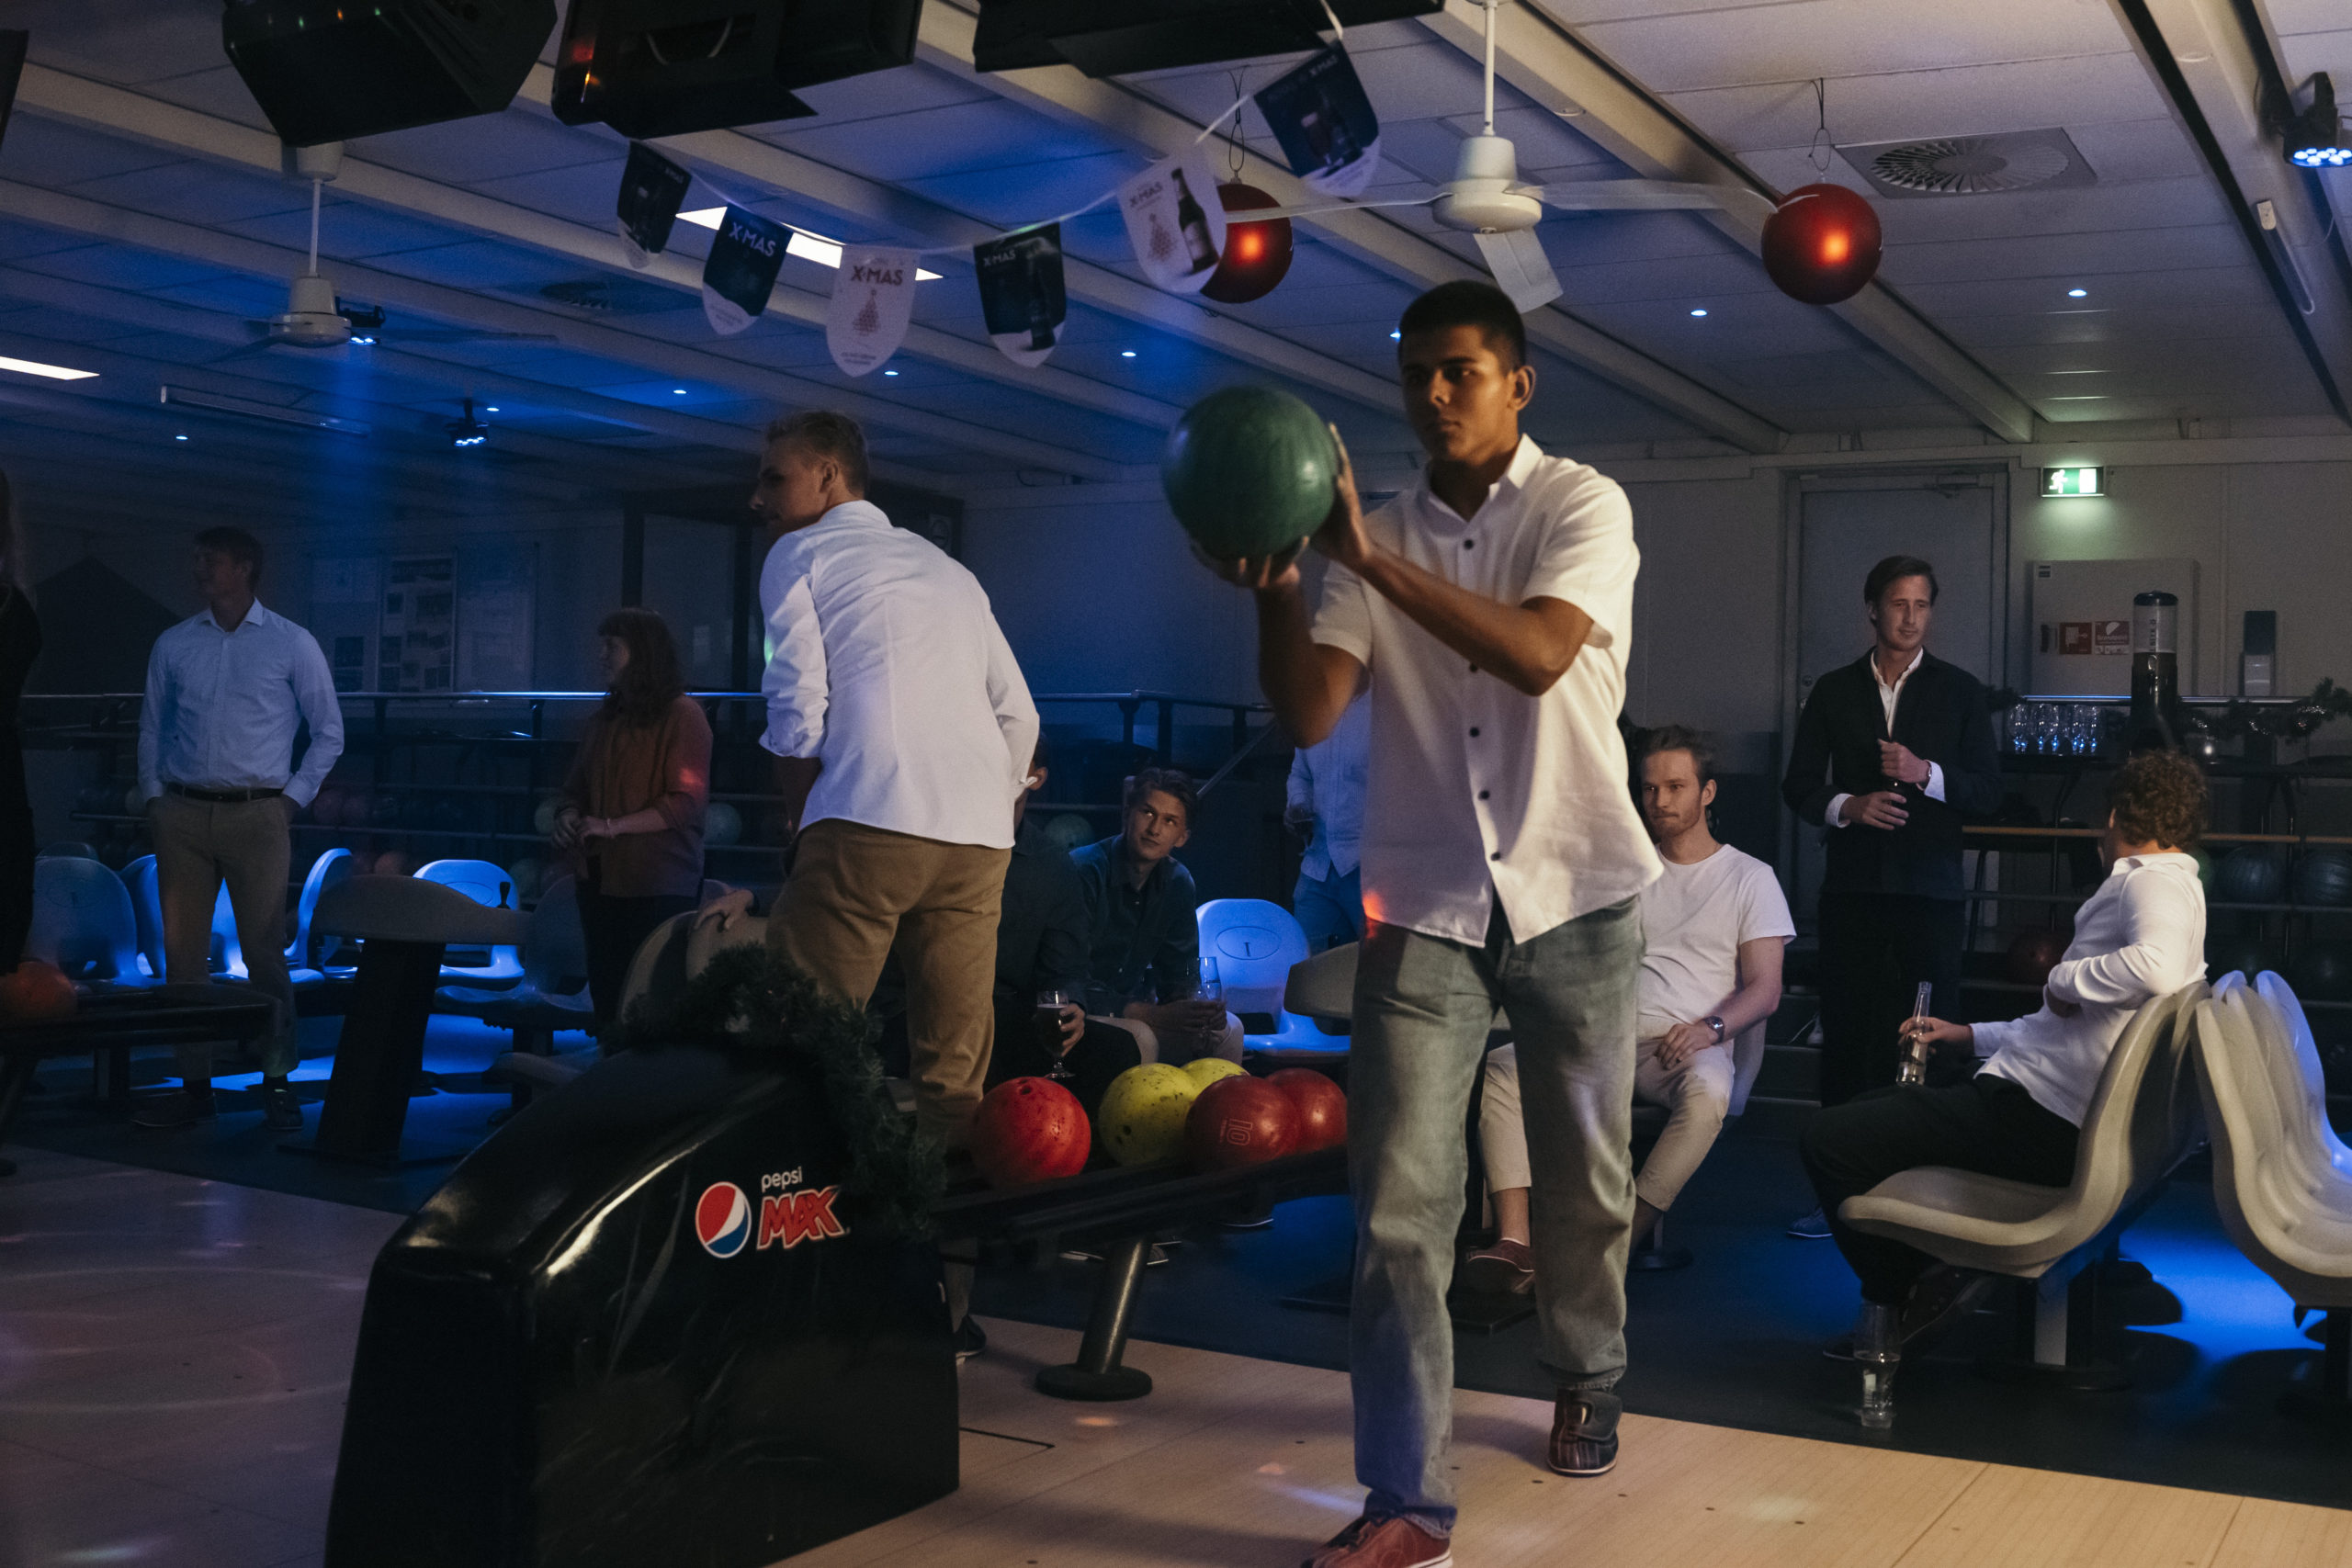 En gruppe unge har valgt at bowle efter deres påskefrokost hos Citybowling i Roskilde